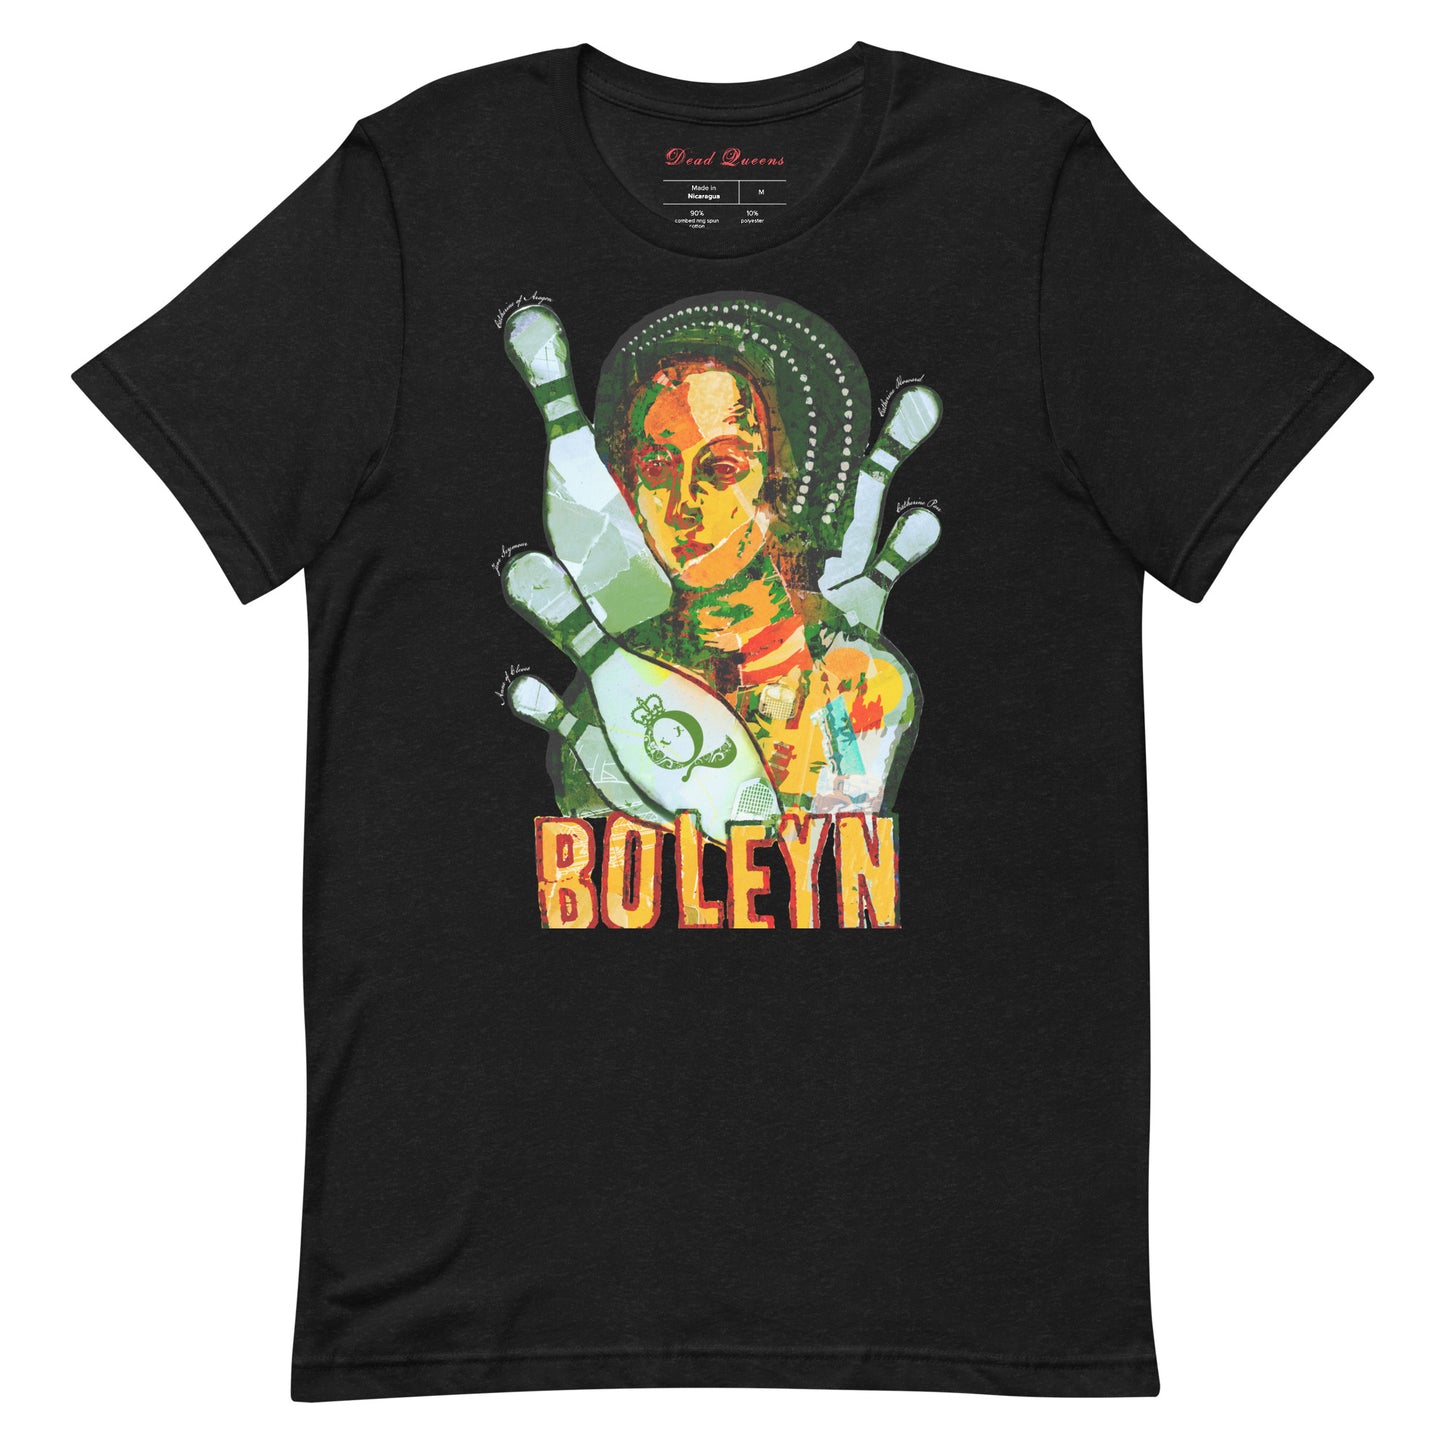 Anne Boleyn Unisex T-Shirt